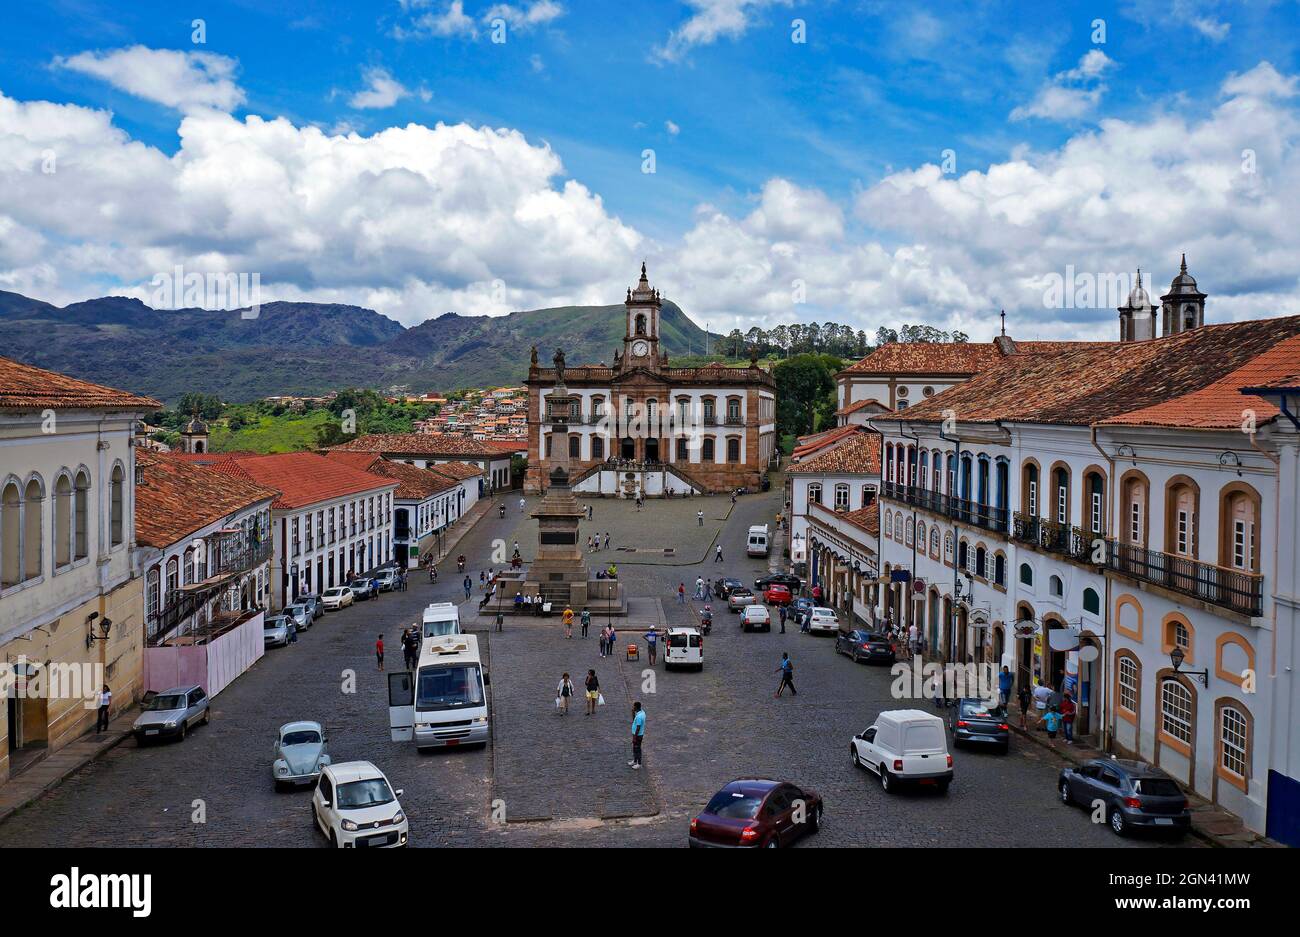 OURO PRETO, MINAS GERAIS, BRASILE - 8 GENNAIO 2018: Vista dalla piazza centrale nella città storica di Ouro Preto con turisti e locali Foto Stock